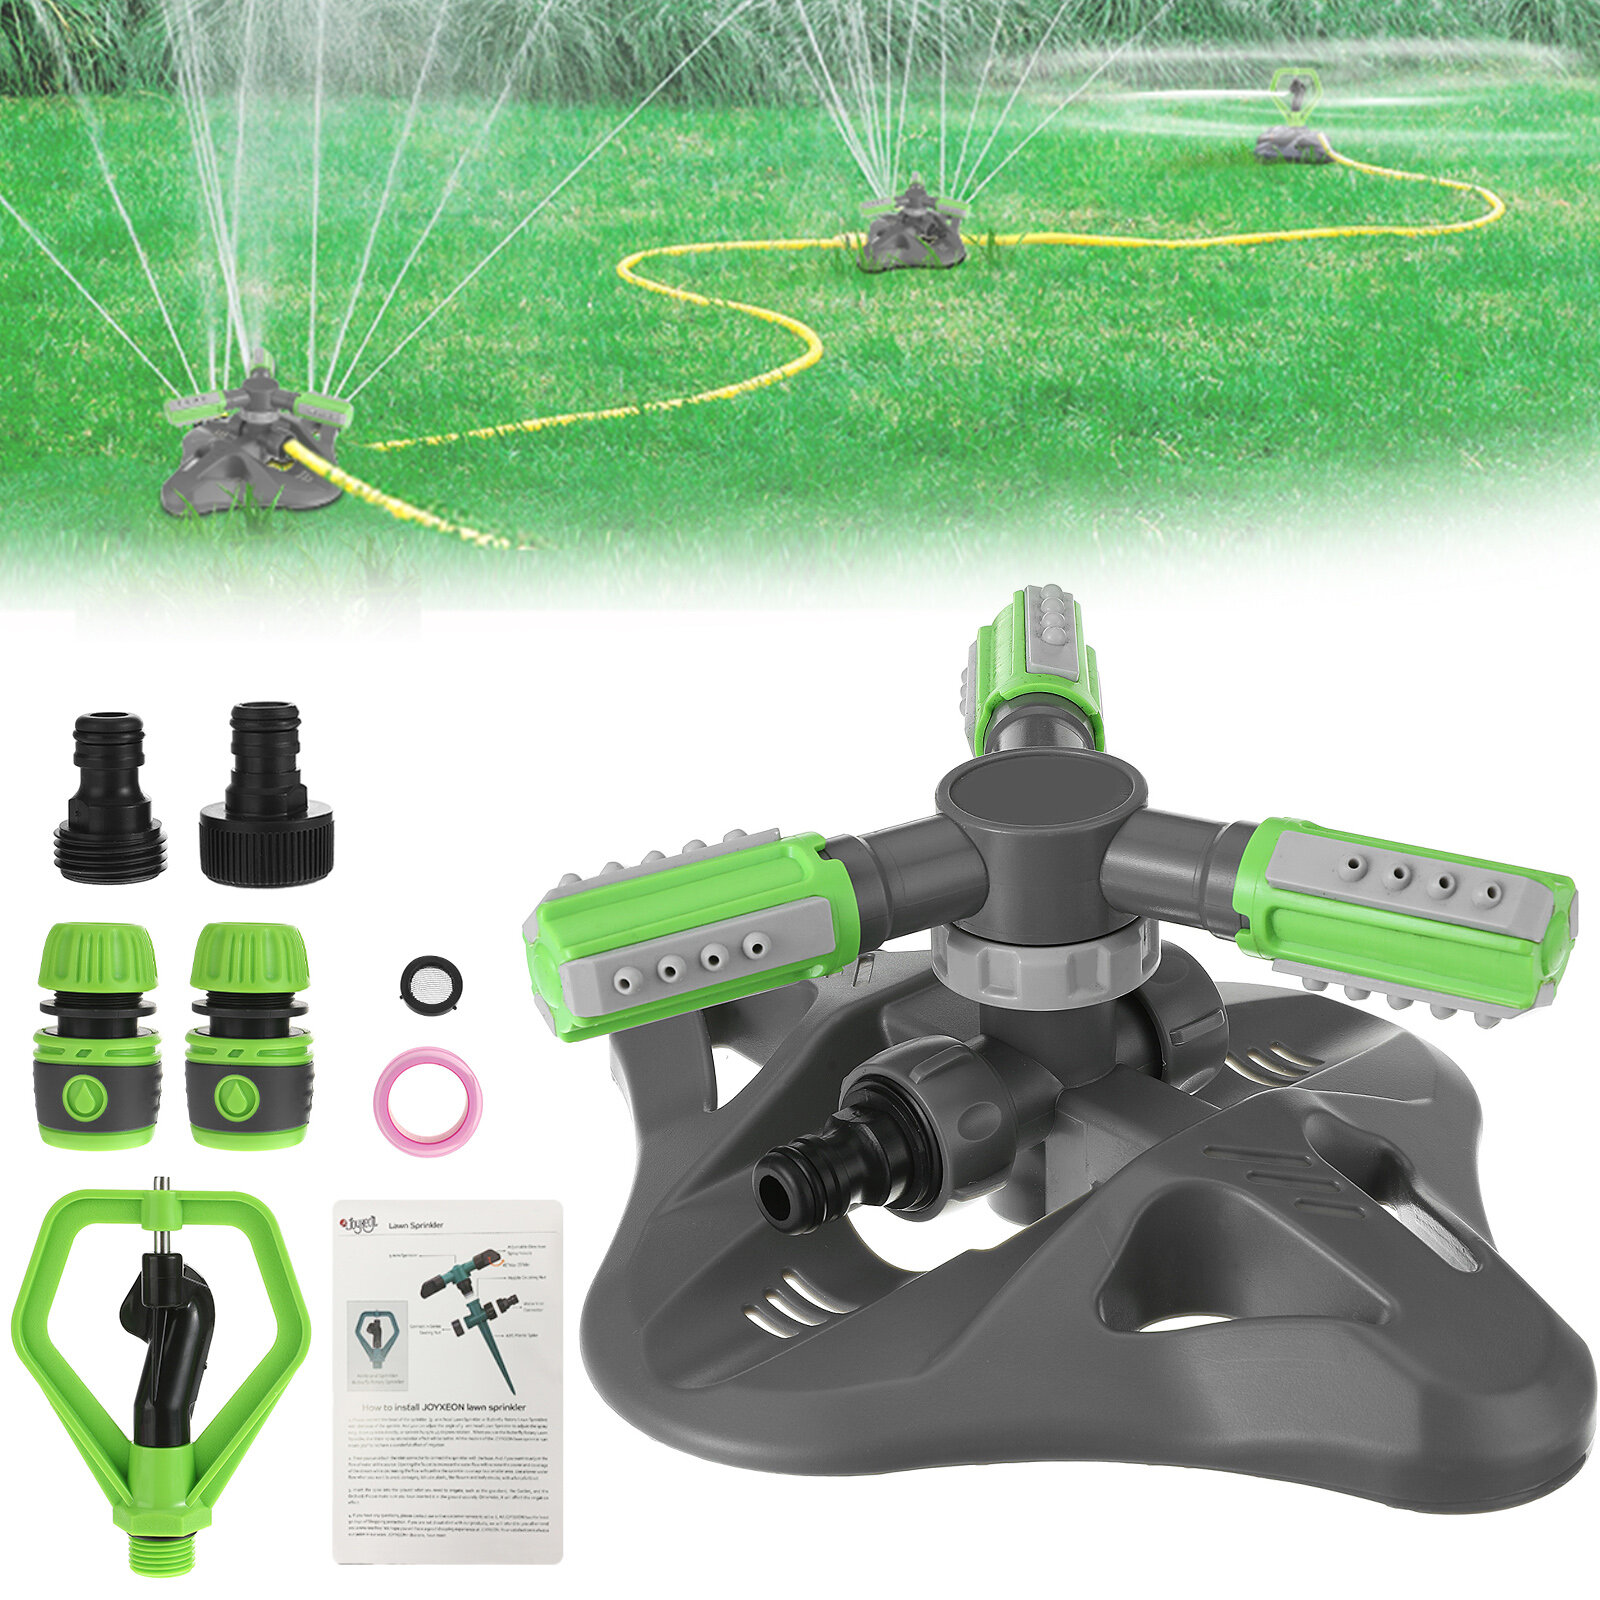 JOYXEON 360° Rotating 3 Arm Lawn Sprinkler Set 3-mode Garden Sprinkler